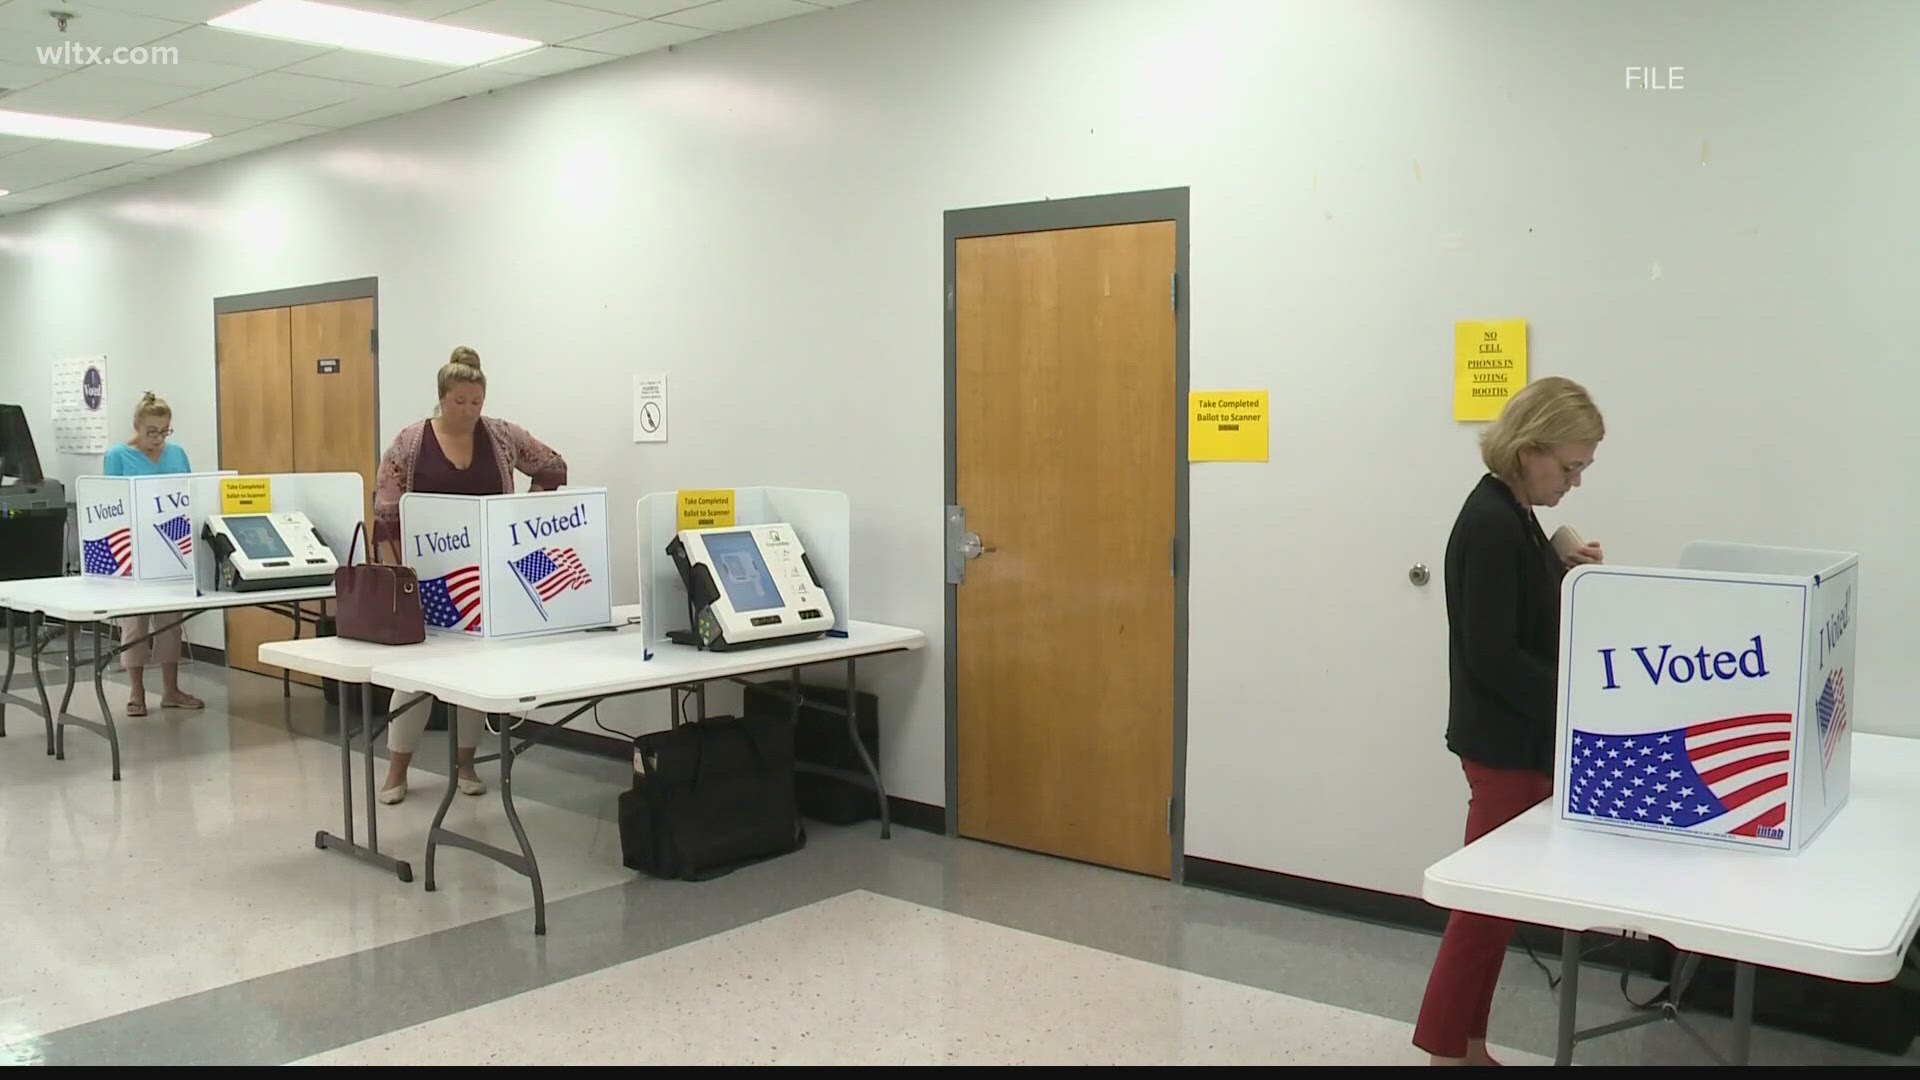 The investigation is over concerns regarding voter registration forms.